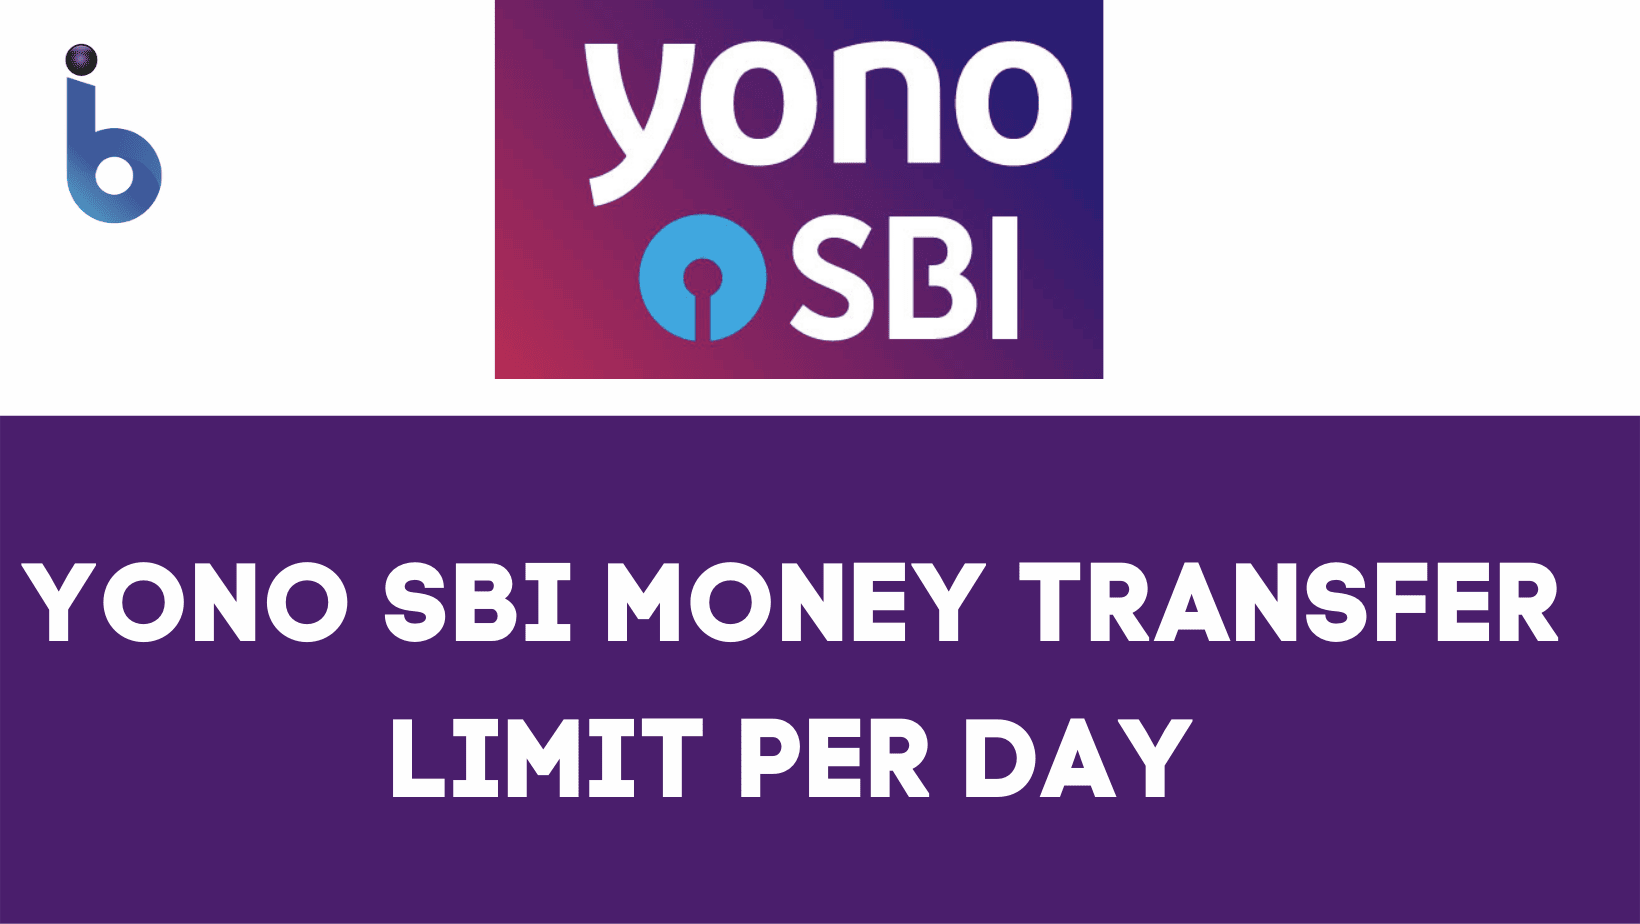 YONO SBI Money Transfer Limit Per Day